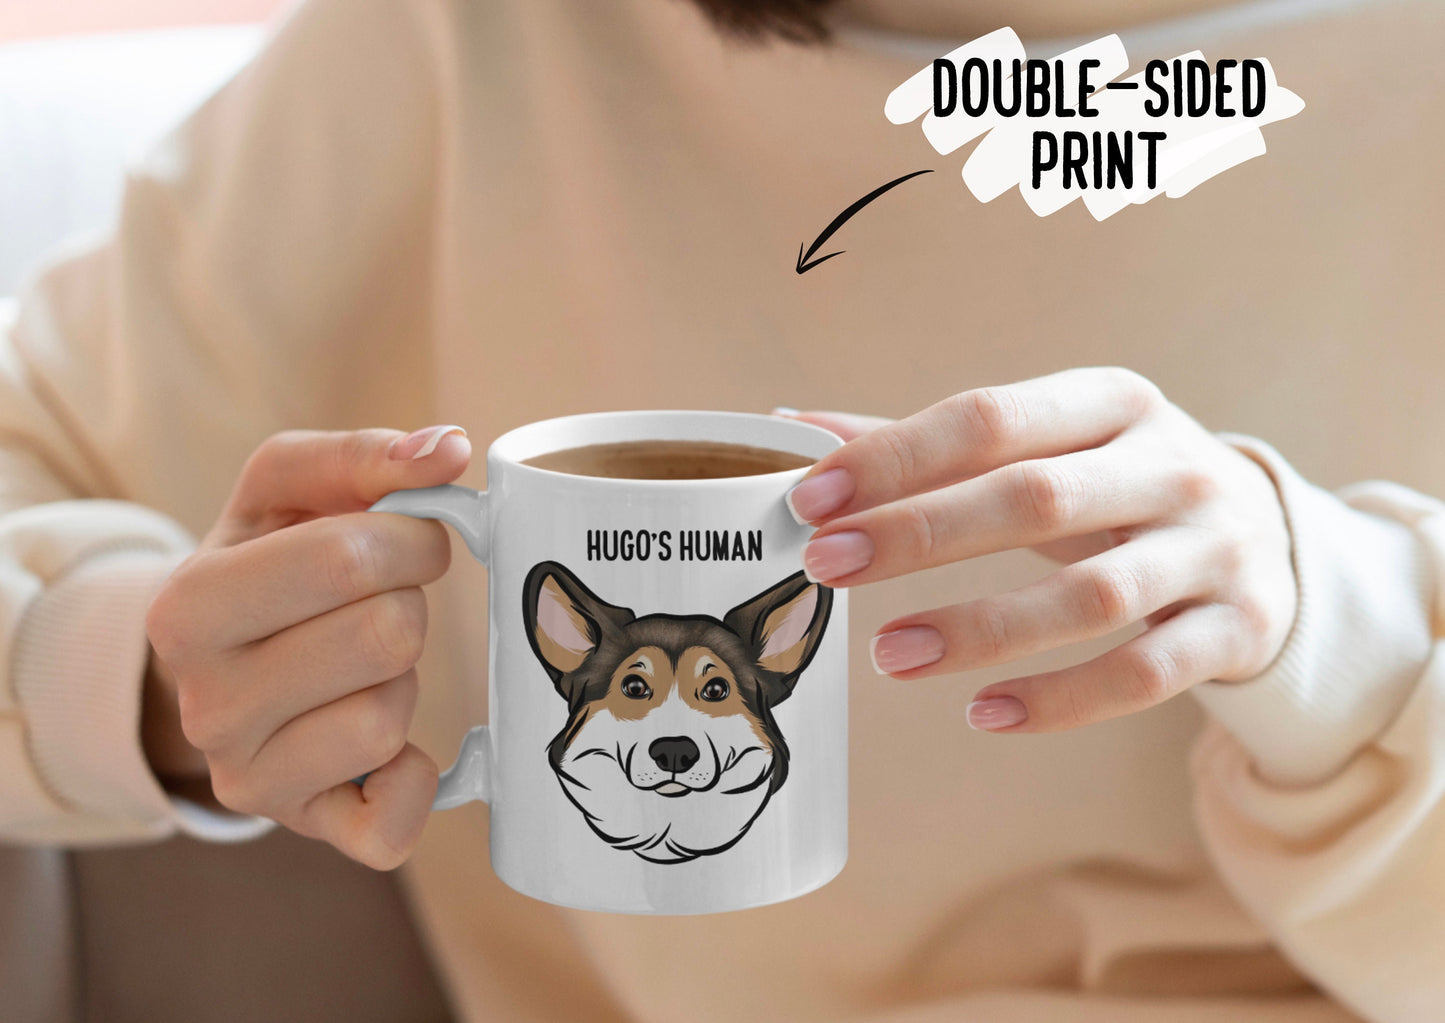 Corgi Dog Mug/ Personalised Welsh Corgi Face Coffee Mug/ Custom Pet Portrait Ceramic Mug/ Corgi Owner Christmas Mug Gift/ Dog Breed Mug